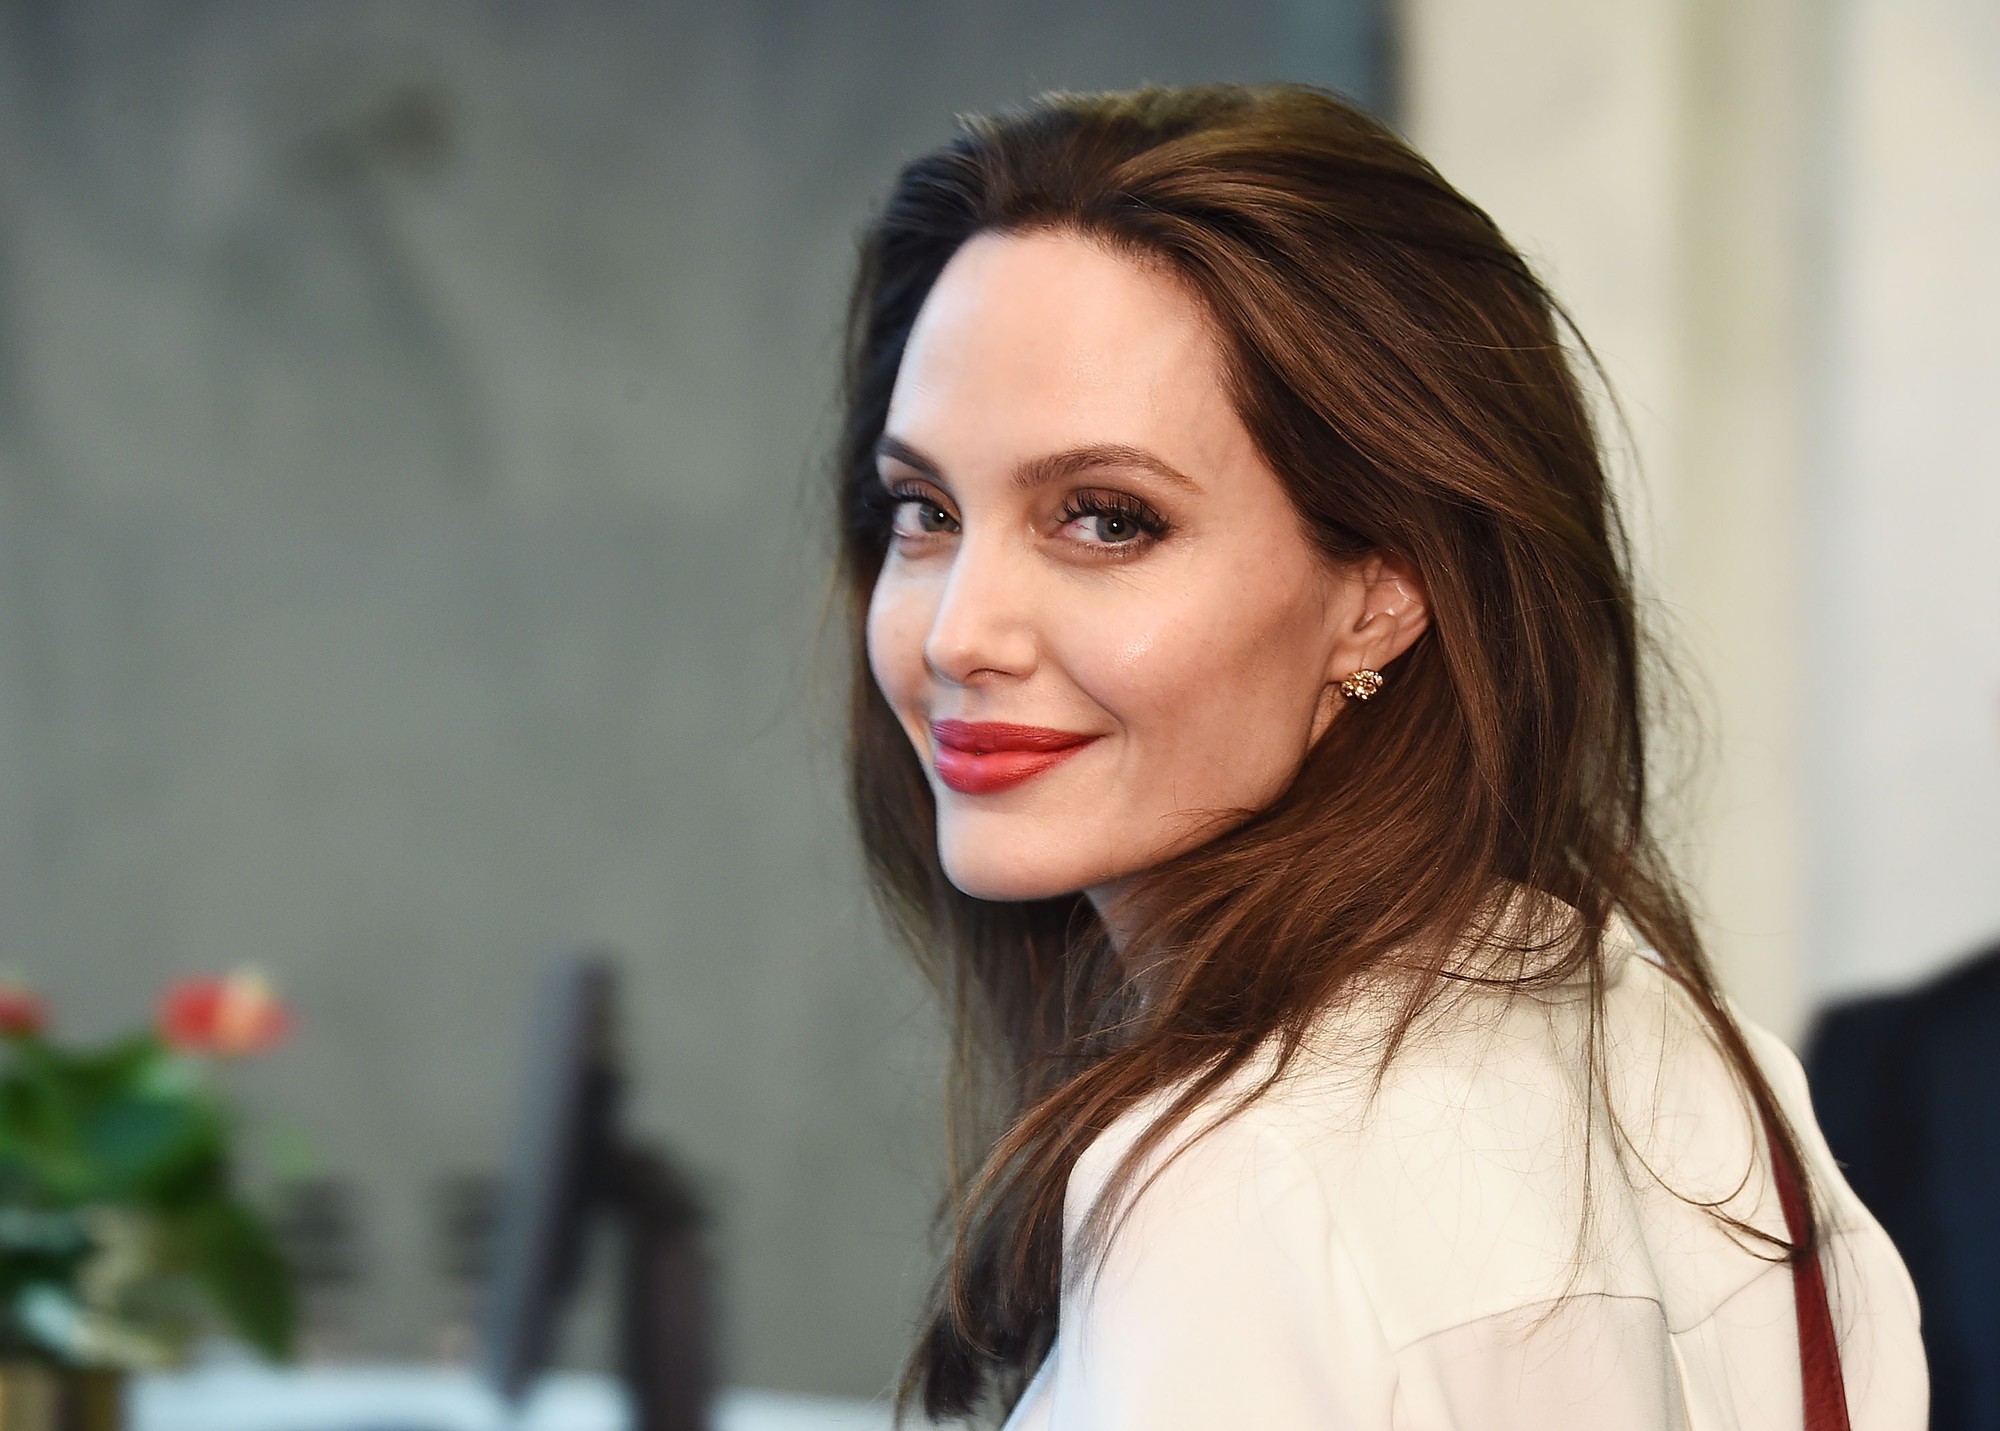 Sau hơn 2 năm chia tay Brad Pitt, con tim của Angelina Jolie đã vui trở lại nhờ sự xuất hiện của một người đàn ông kém tuổi? - Ảnh 2.